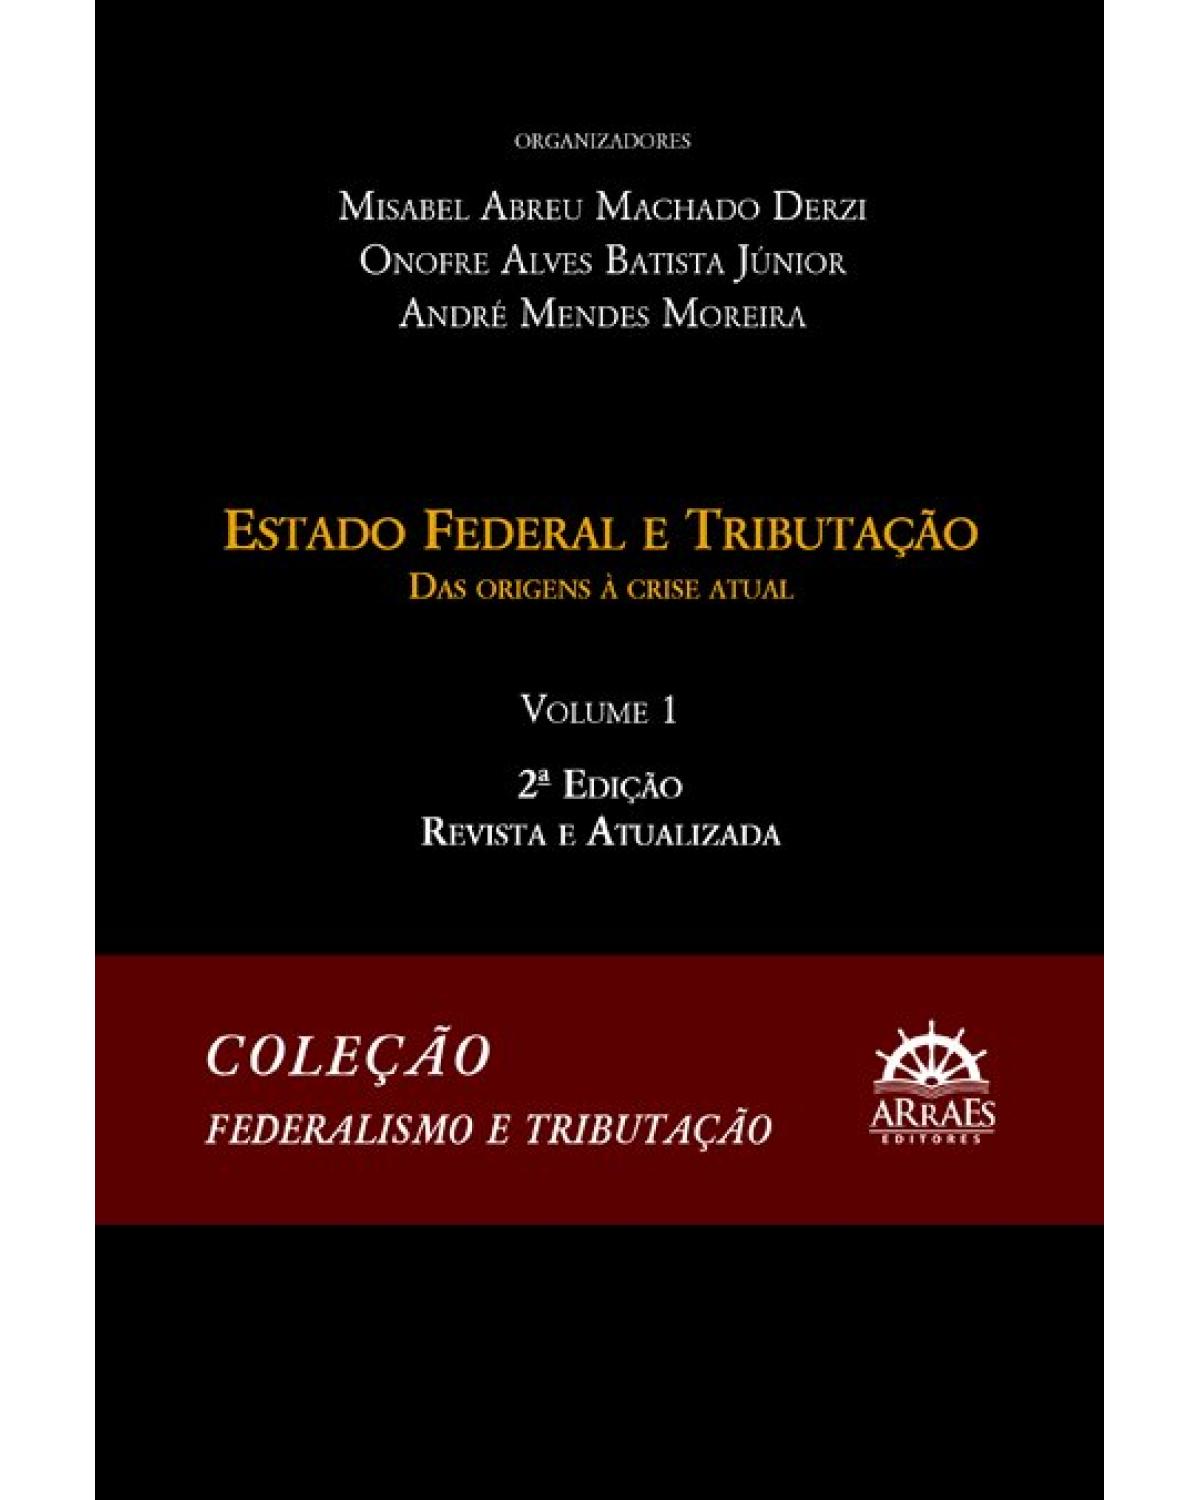 Estado federal e tributação - Volume 1: das origens à crise atual - 2ª Edição | 2019